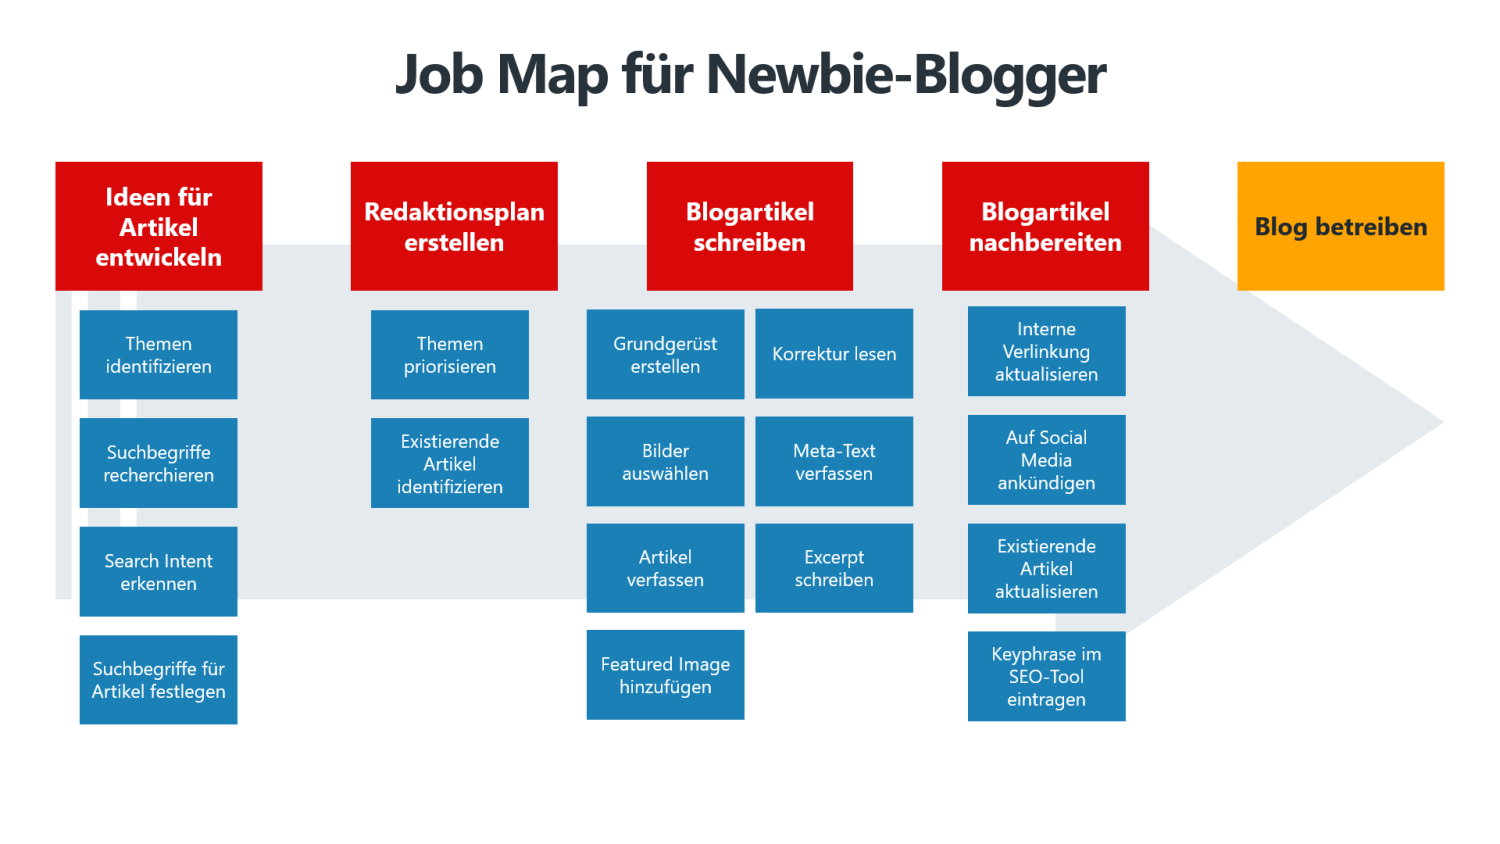 Schematischer Aufbau einer Job Map am Beispiel "Newbie-Blogger"